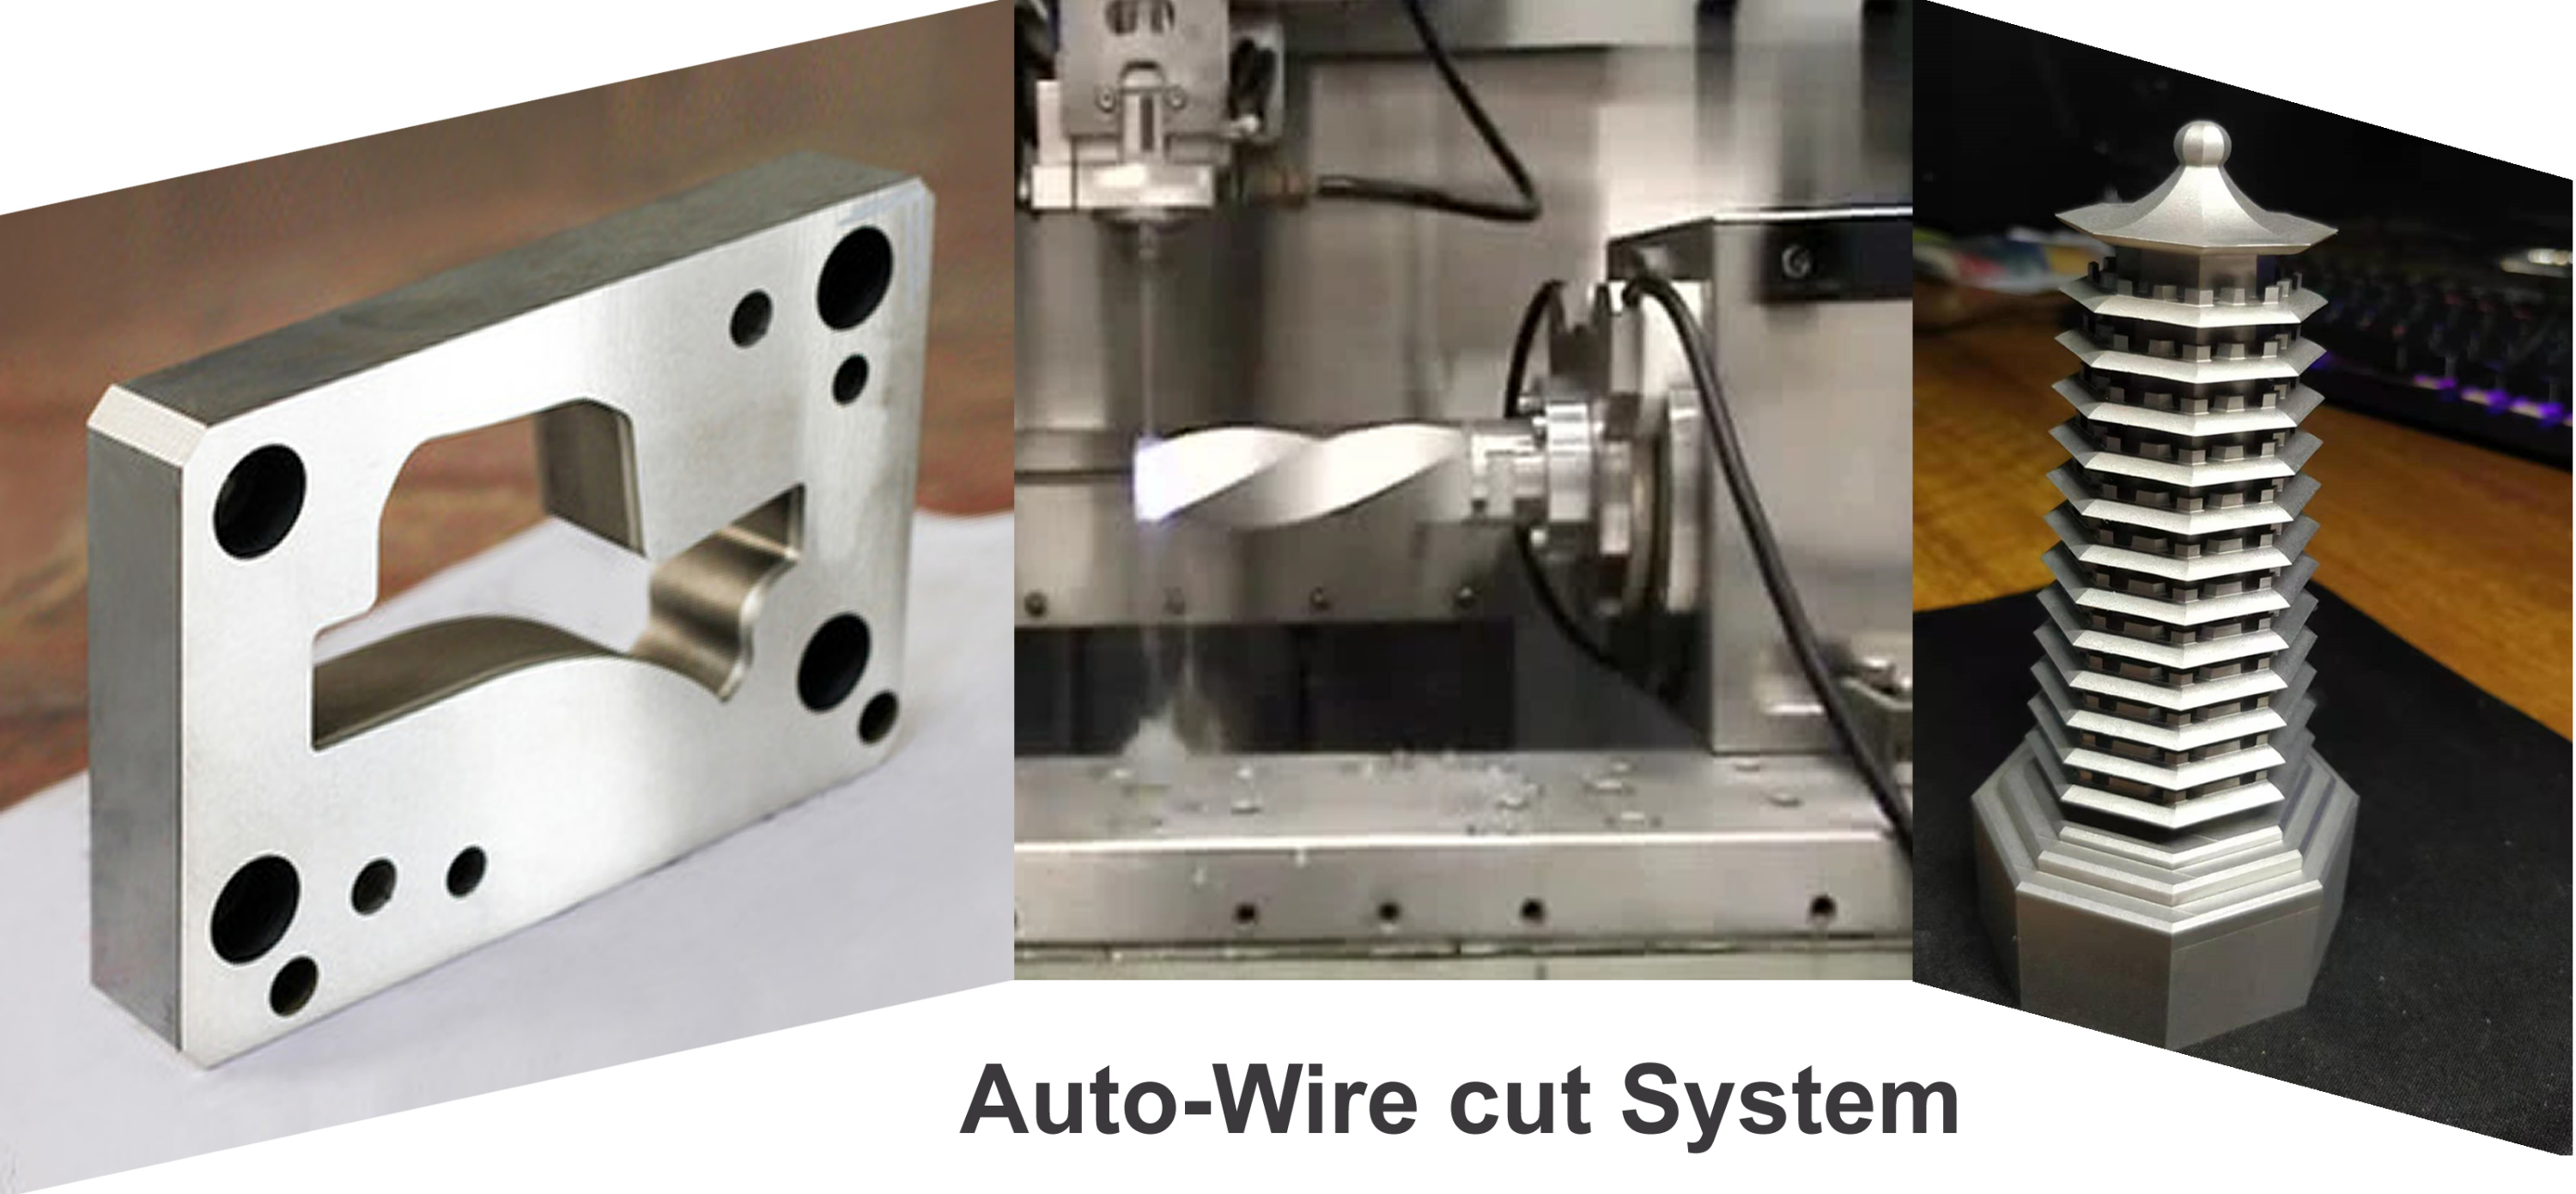 Auto-Wire cut System 线切割自动系统